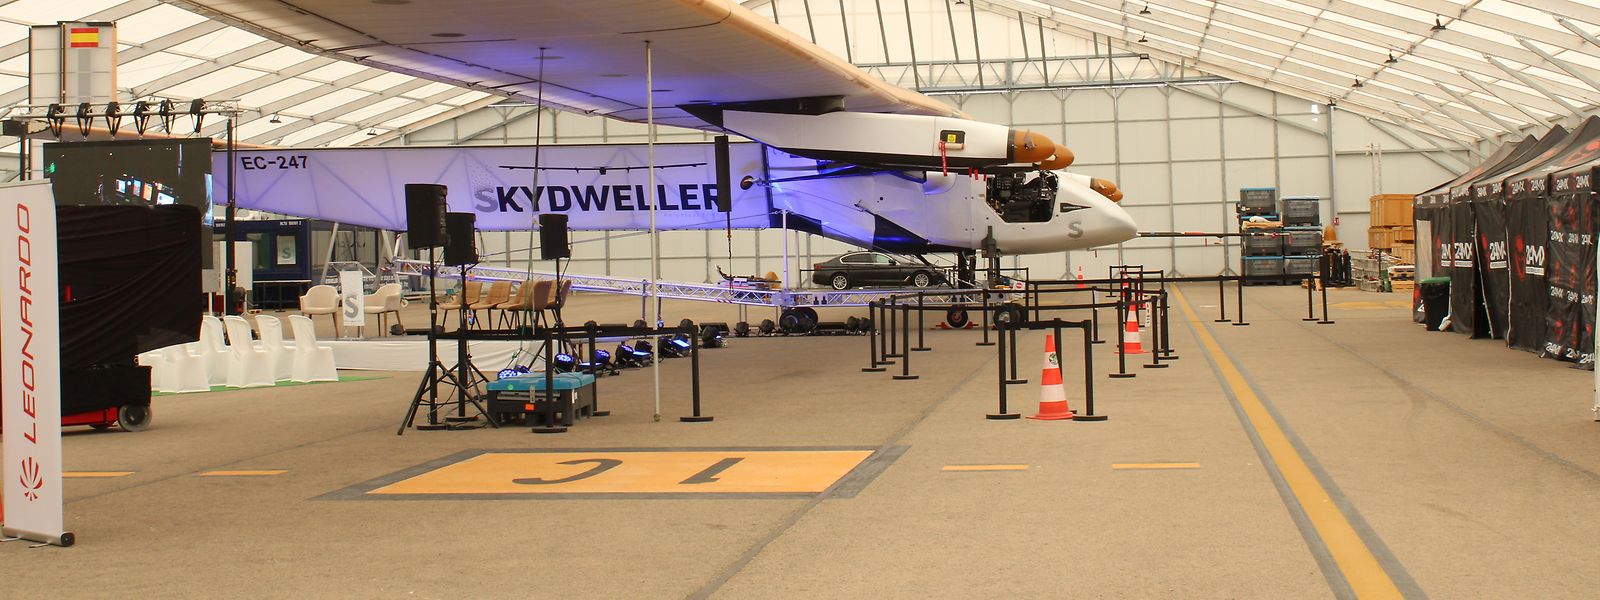 Mit einer Flügelspannbreite von 72 Metern und einem Gewicht von 2,4 Tonnen kann der Skydweller bis zu 400 Kilogramm Material transportieren. 